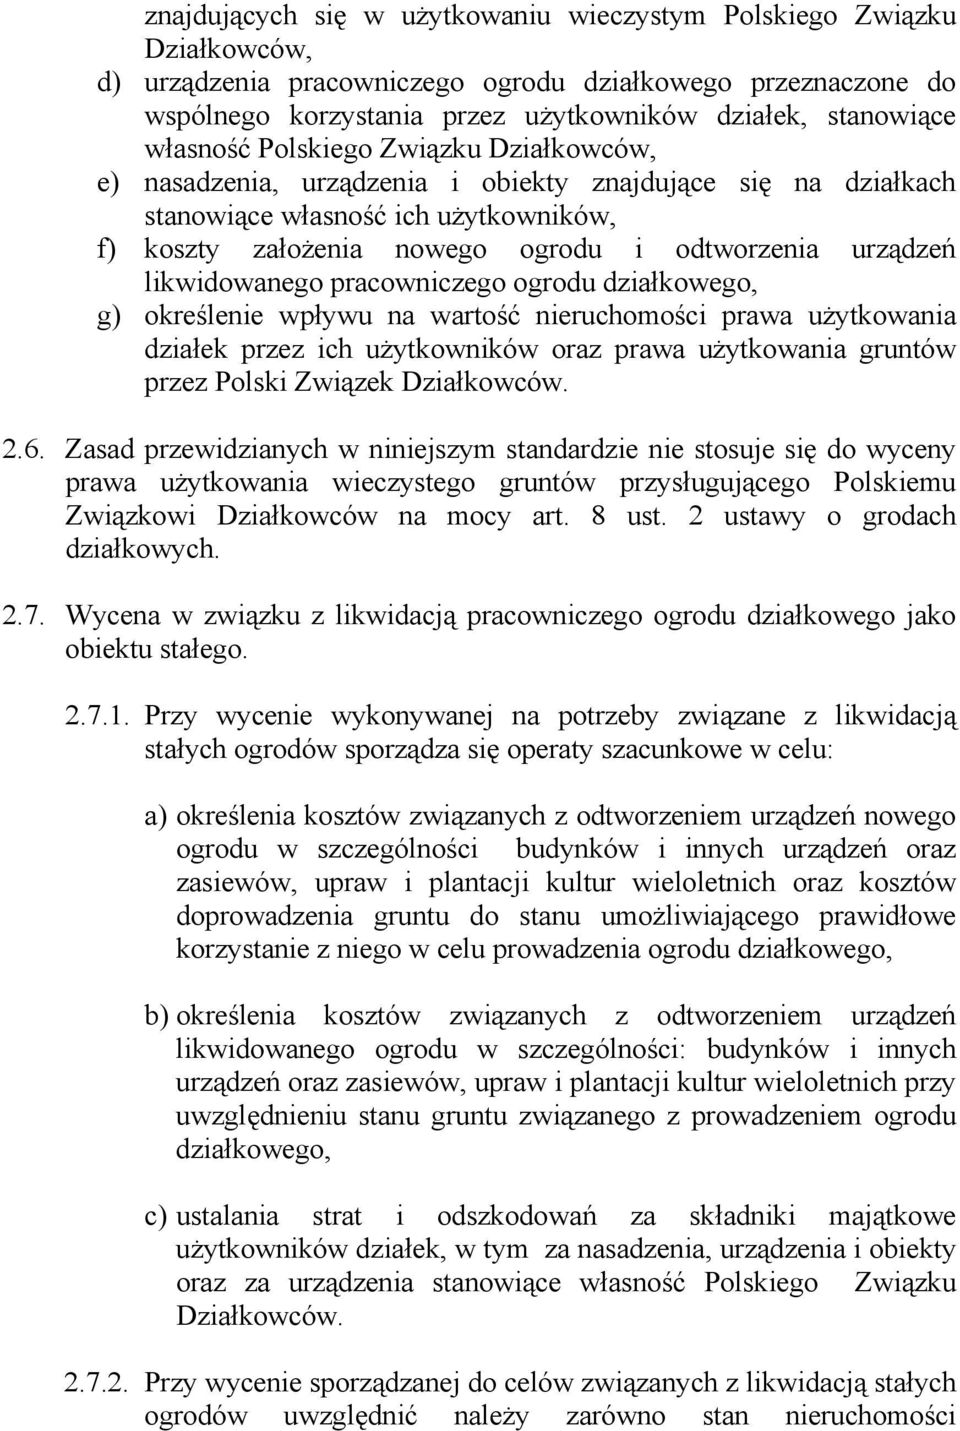 likwidowanego pracowniczego ogrodu działkowego, g) określenie wpływu na wartość nieruchomości prawa użytkowania działek przez ich użytkowników oraz prawa użytkowania gruntów przez Polski Związek